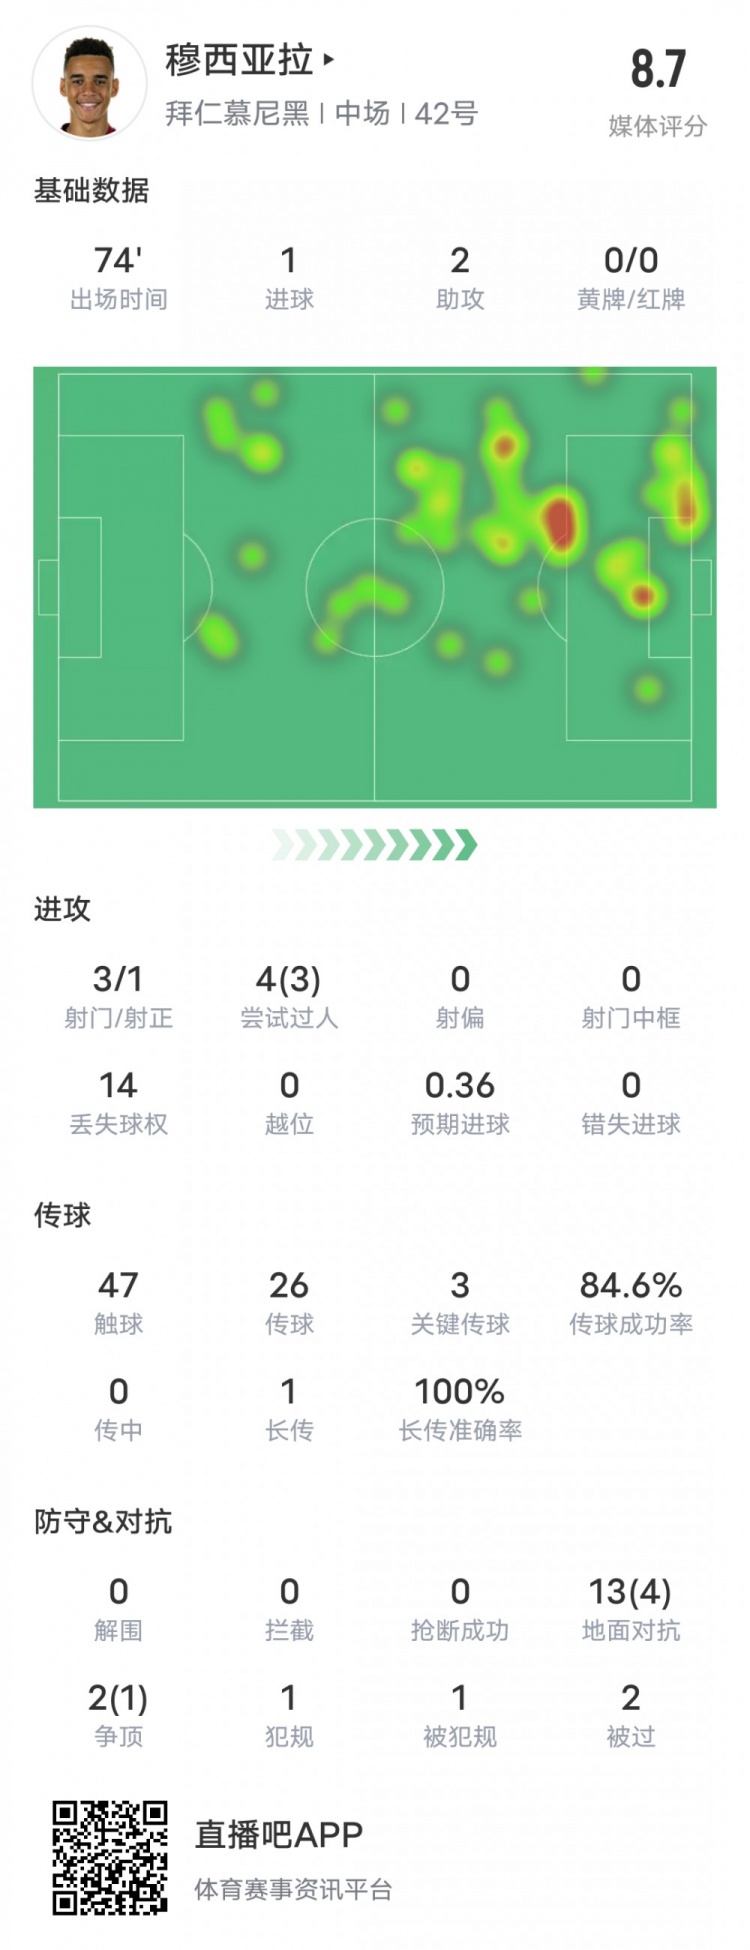 穆西亚拉本场比赛数据：1进球2助攻3关键传球，评分8.7